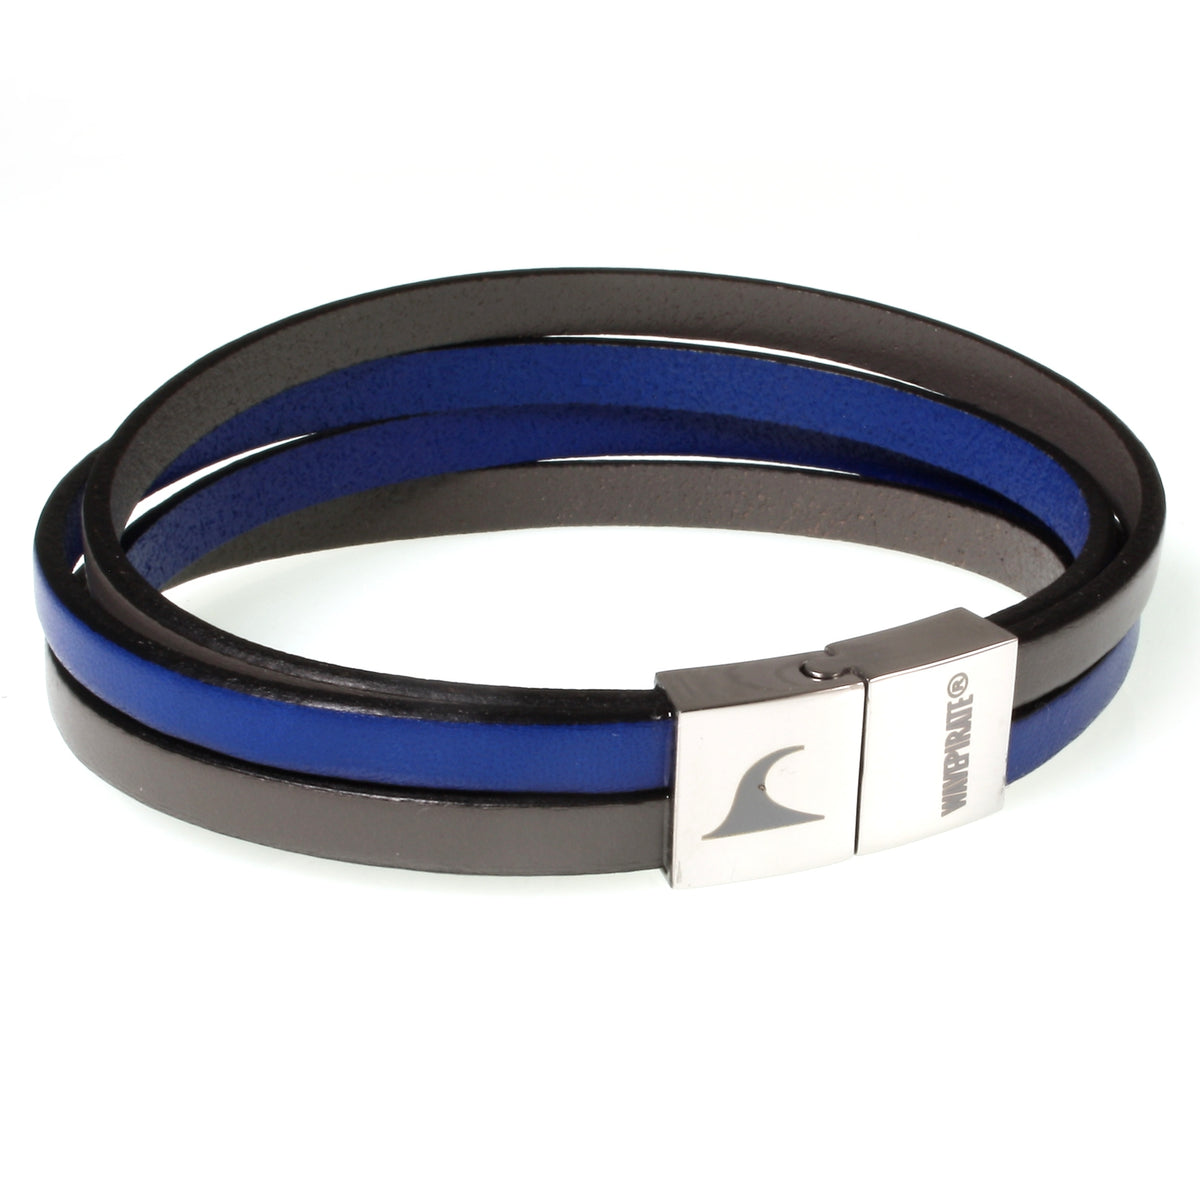 Herren-Leder-Armband-Twist-grau-blau-flach-Edelstahlverschluss-vorn-wavepirate-shop